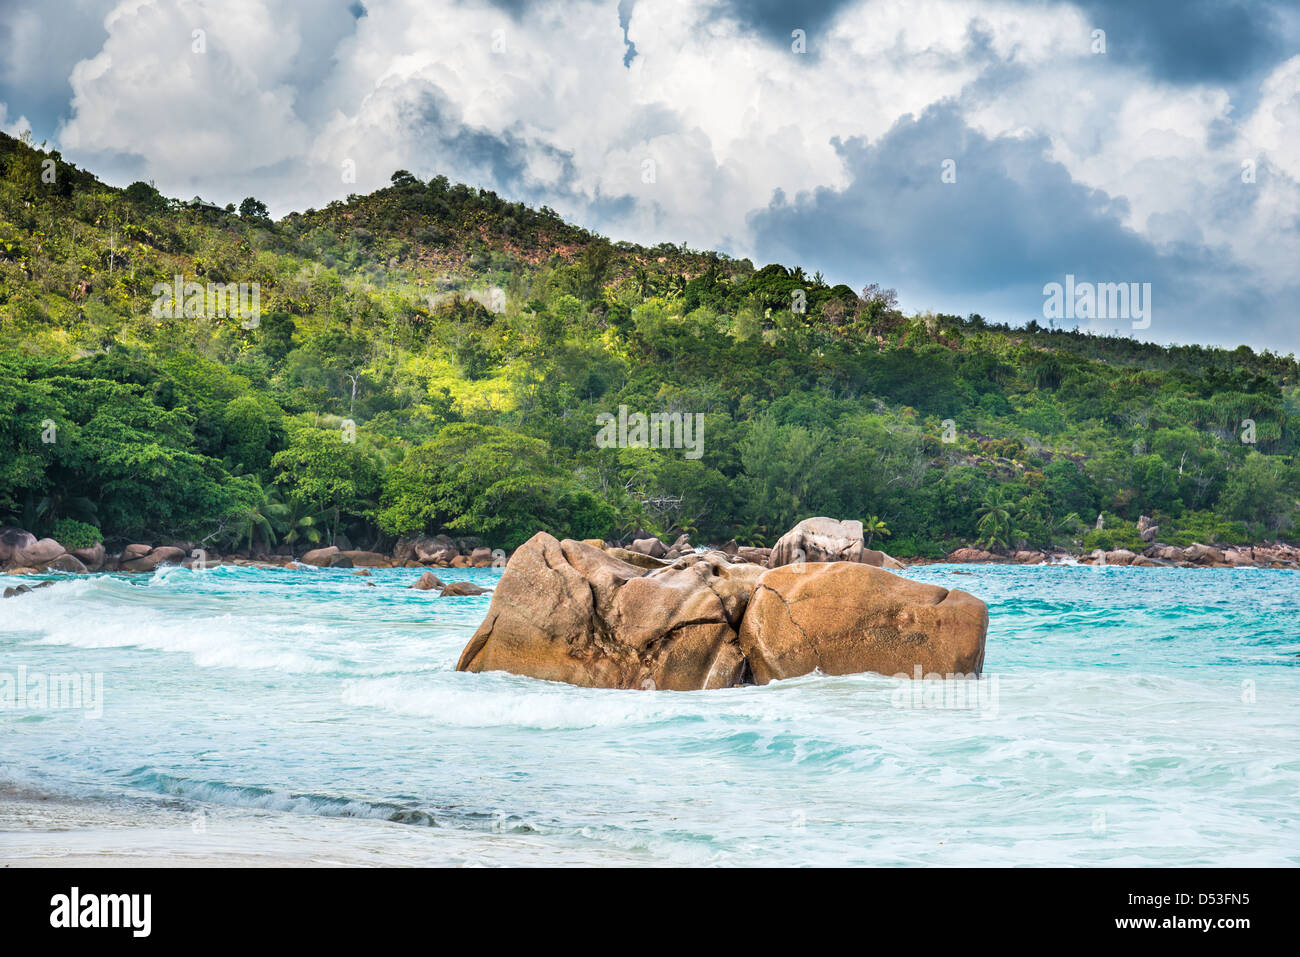 Plage d'Anse Lazio, Praslin Island, Seychelles Banque D'Images